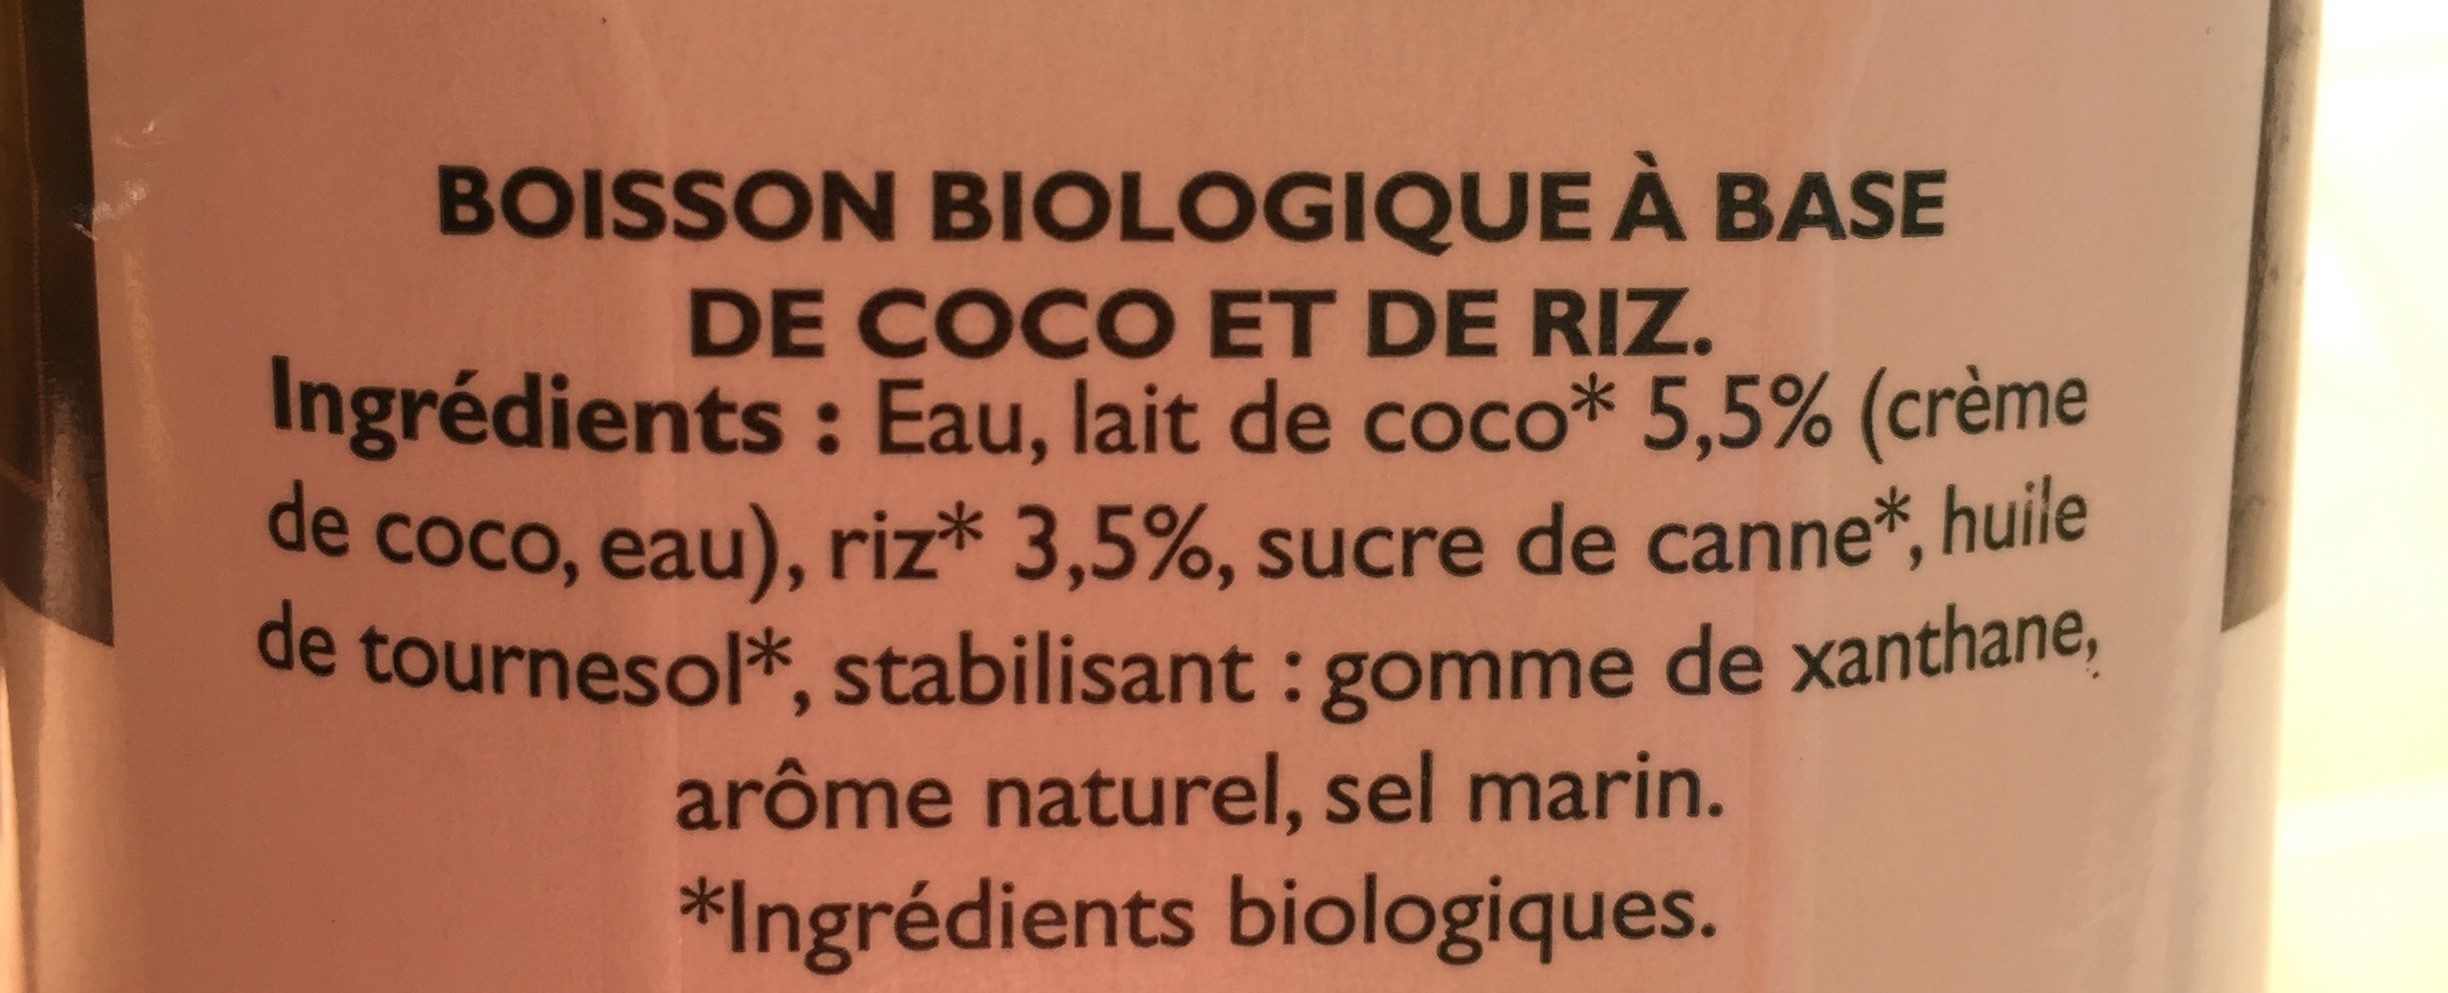 Boisson vegetale coco et riz - Ingredients - fr